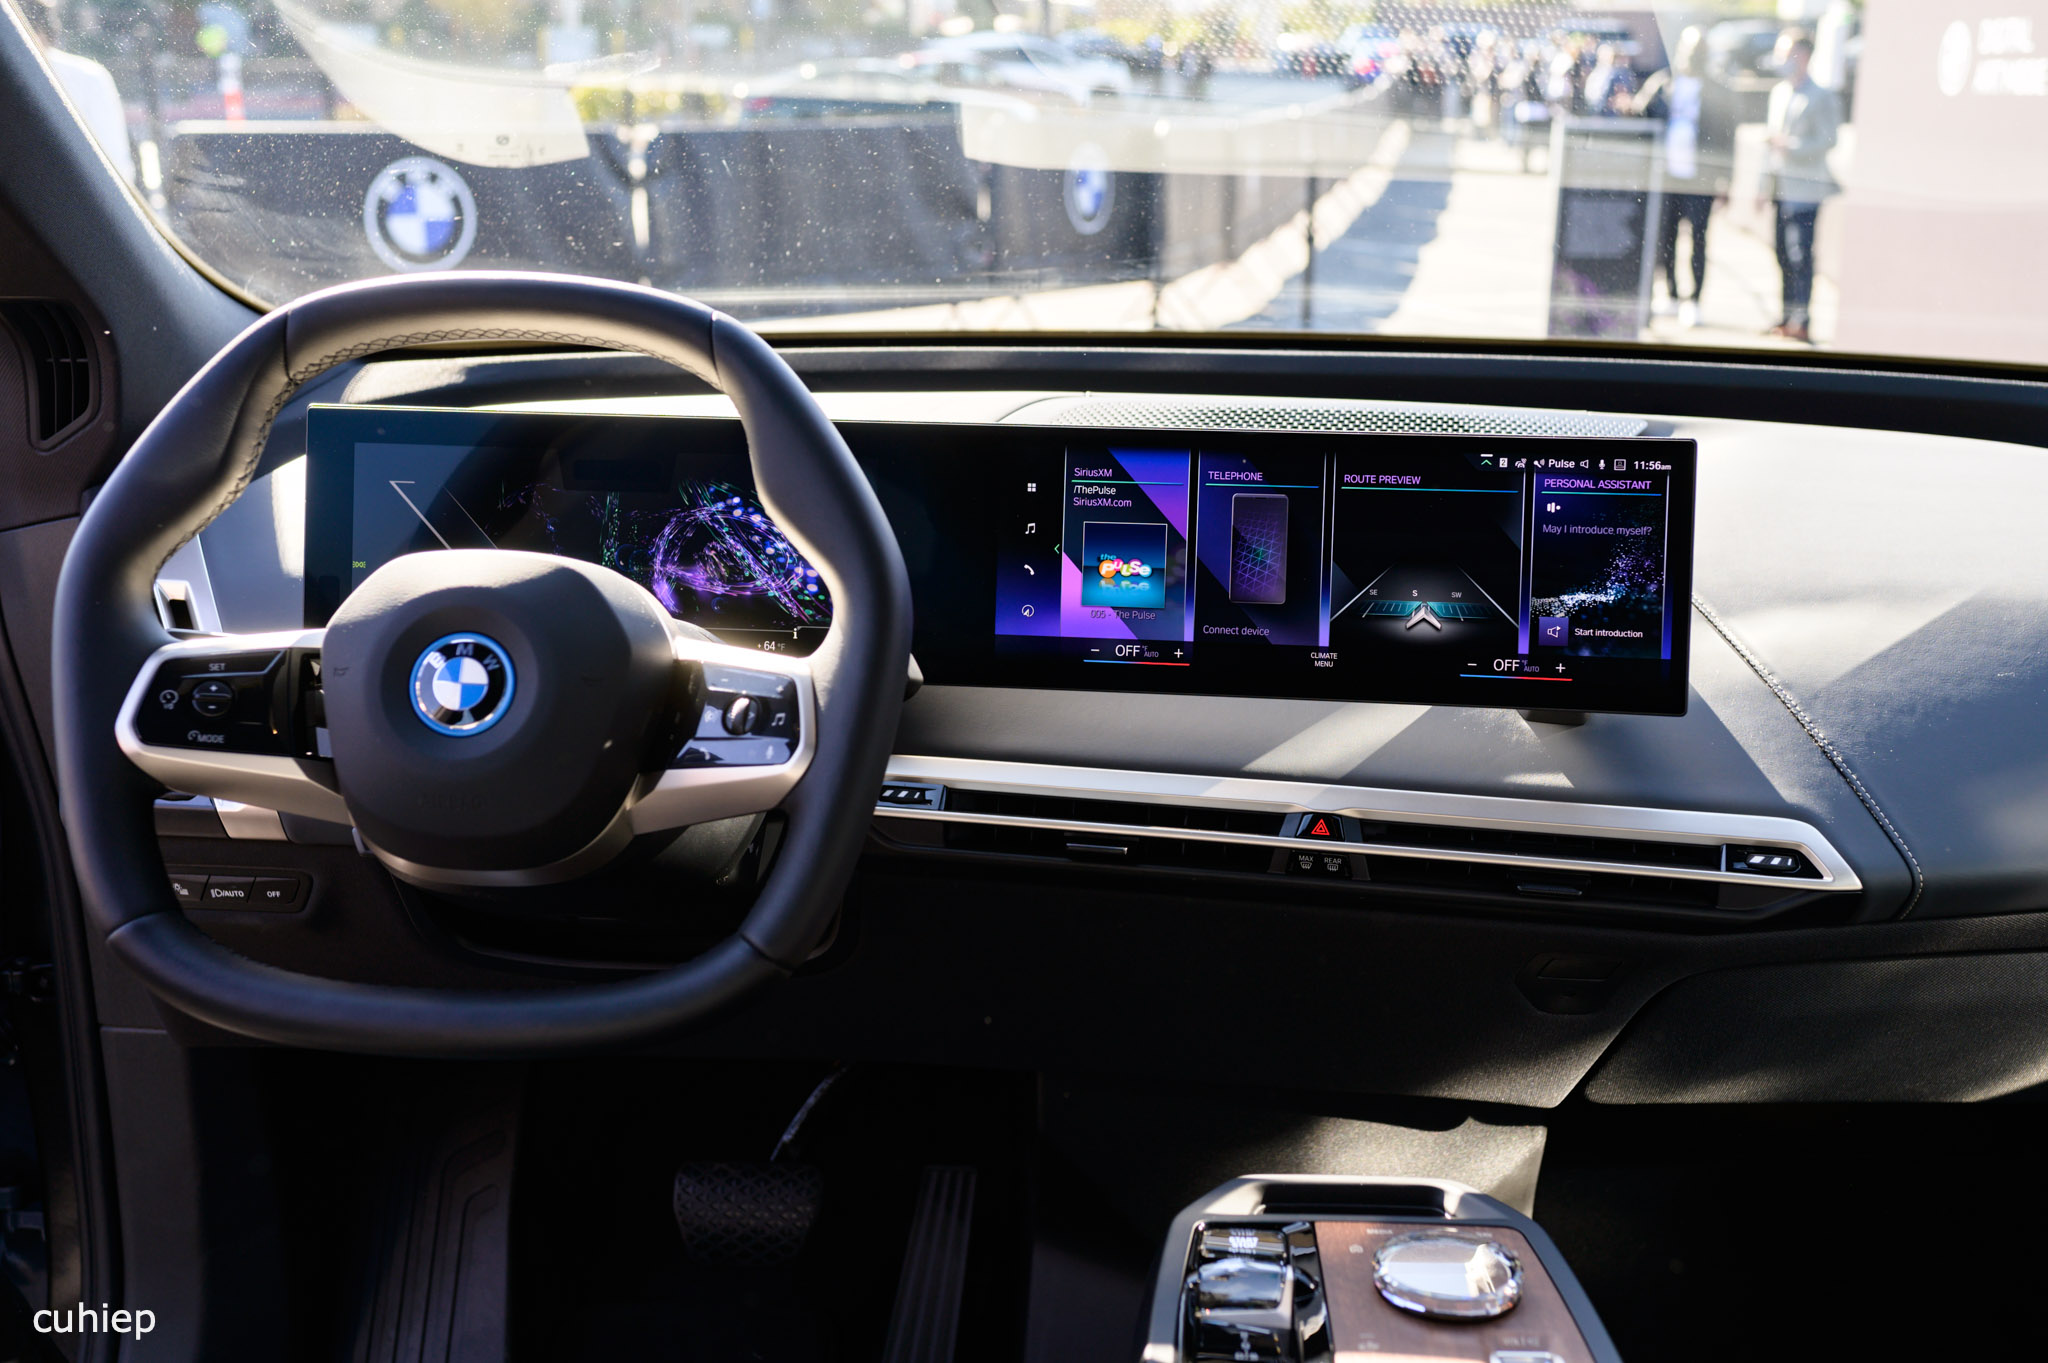 Nghiên cứu: Nút bấm vật lý trên xe hơi vẫn hiệu quả hơn nhiều so với màn hình cảm ứng